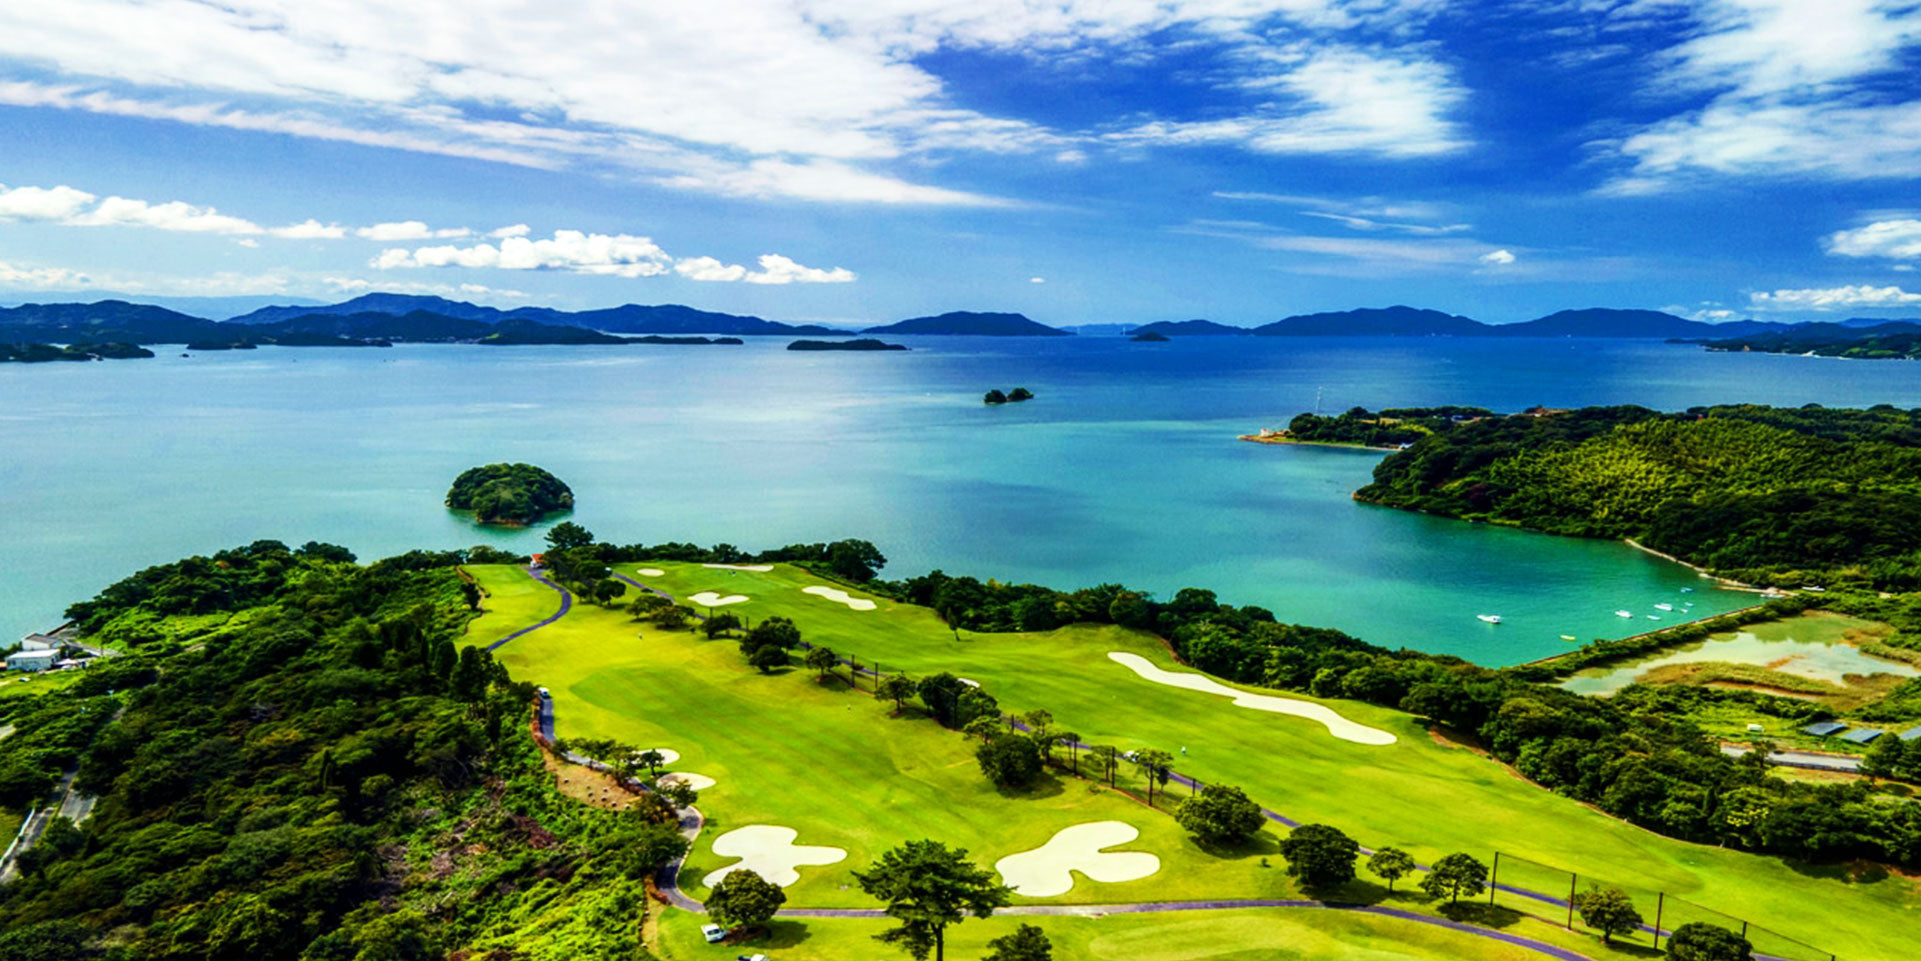 多島美の瀬戸内を眺望するリゾートゴルフ